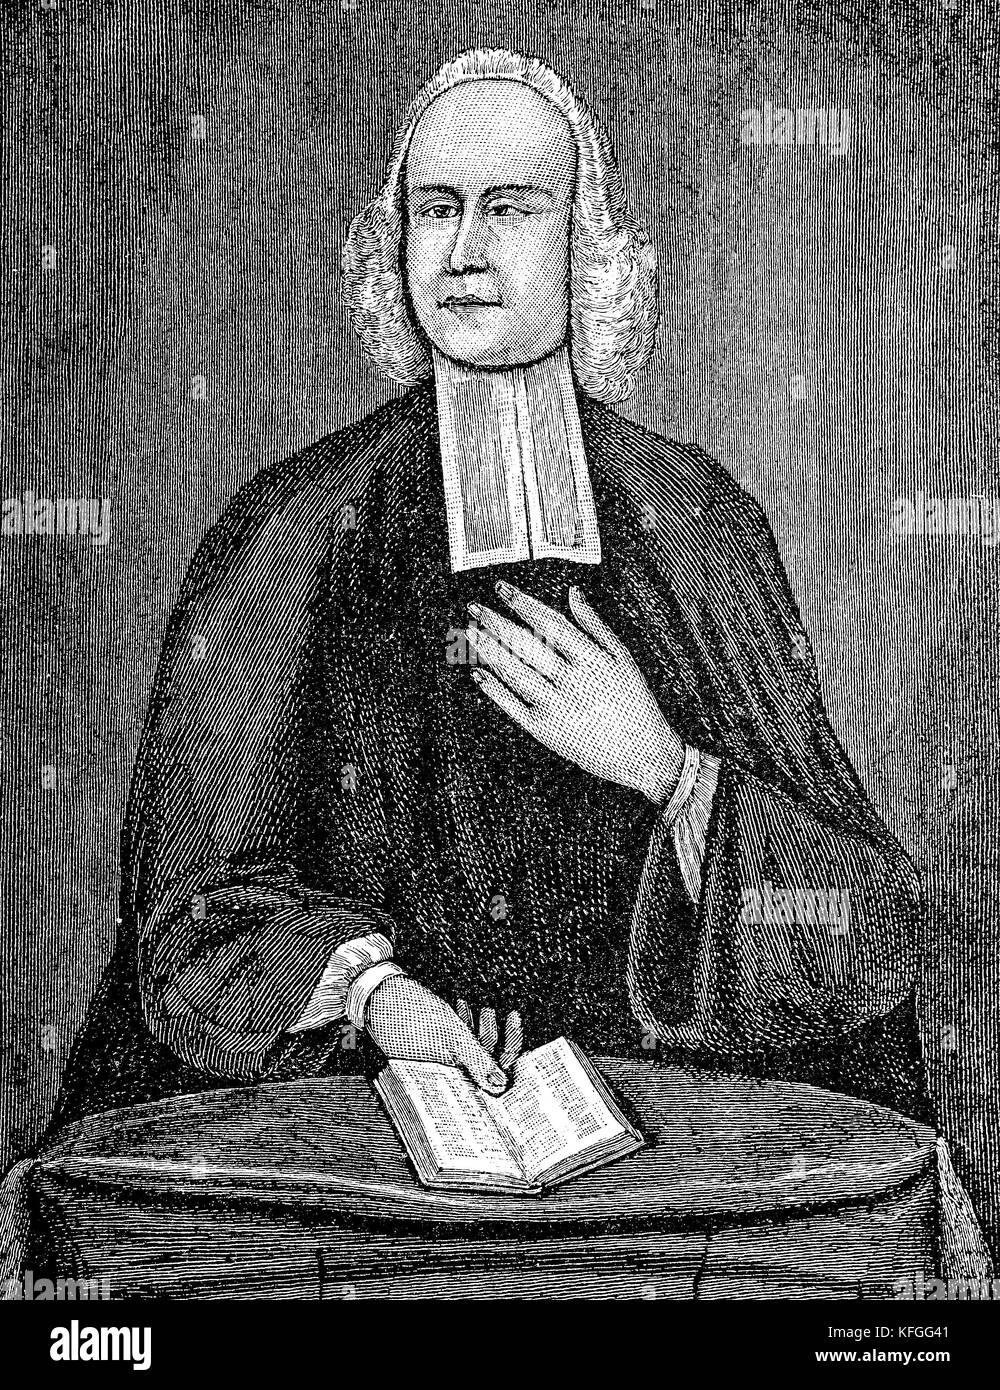 George Whitefield, George Whitfield, religieux anglican anglais qui était l'un des fondateurs du méthodisme et du mouvement évangélique. Méthodiste George Whitefield 1714-1770 Banque D'Images